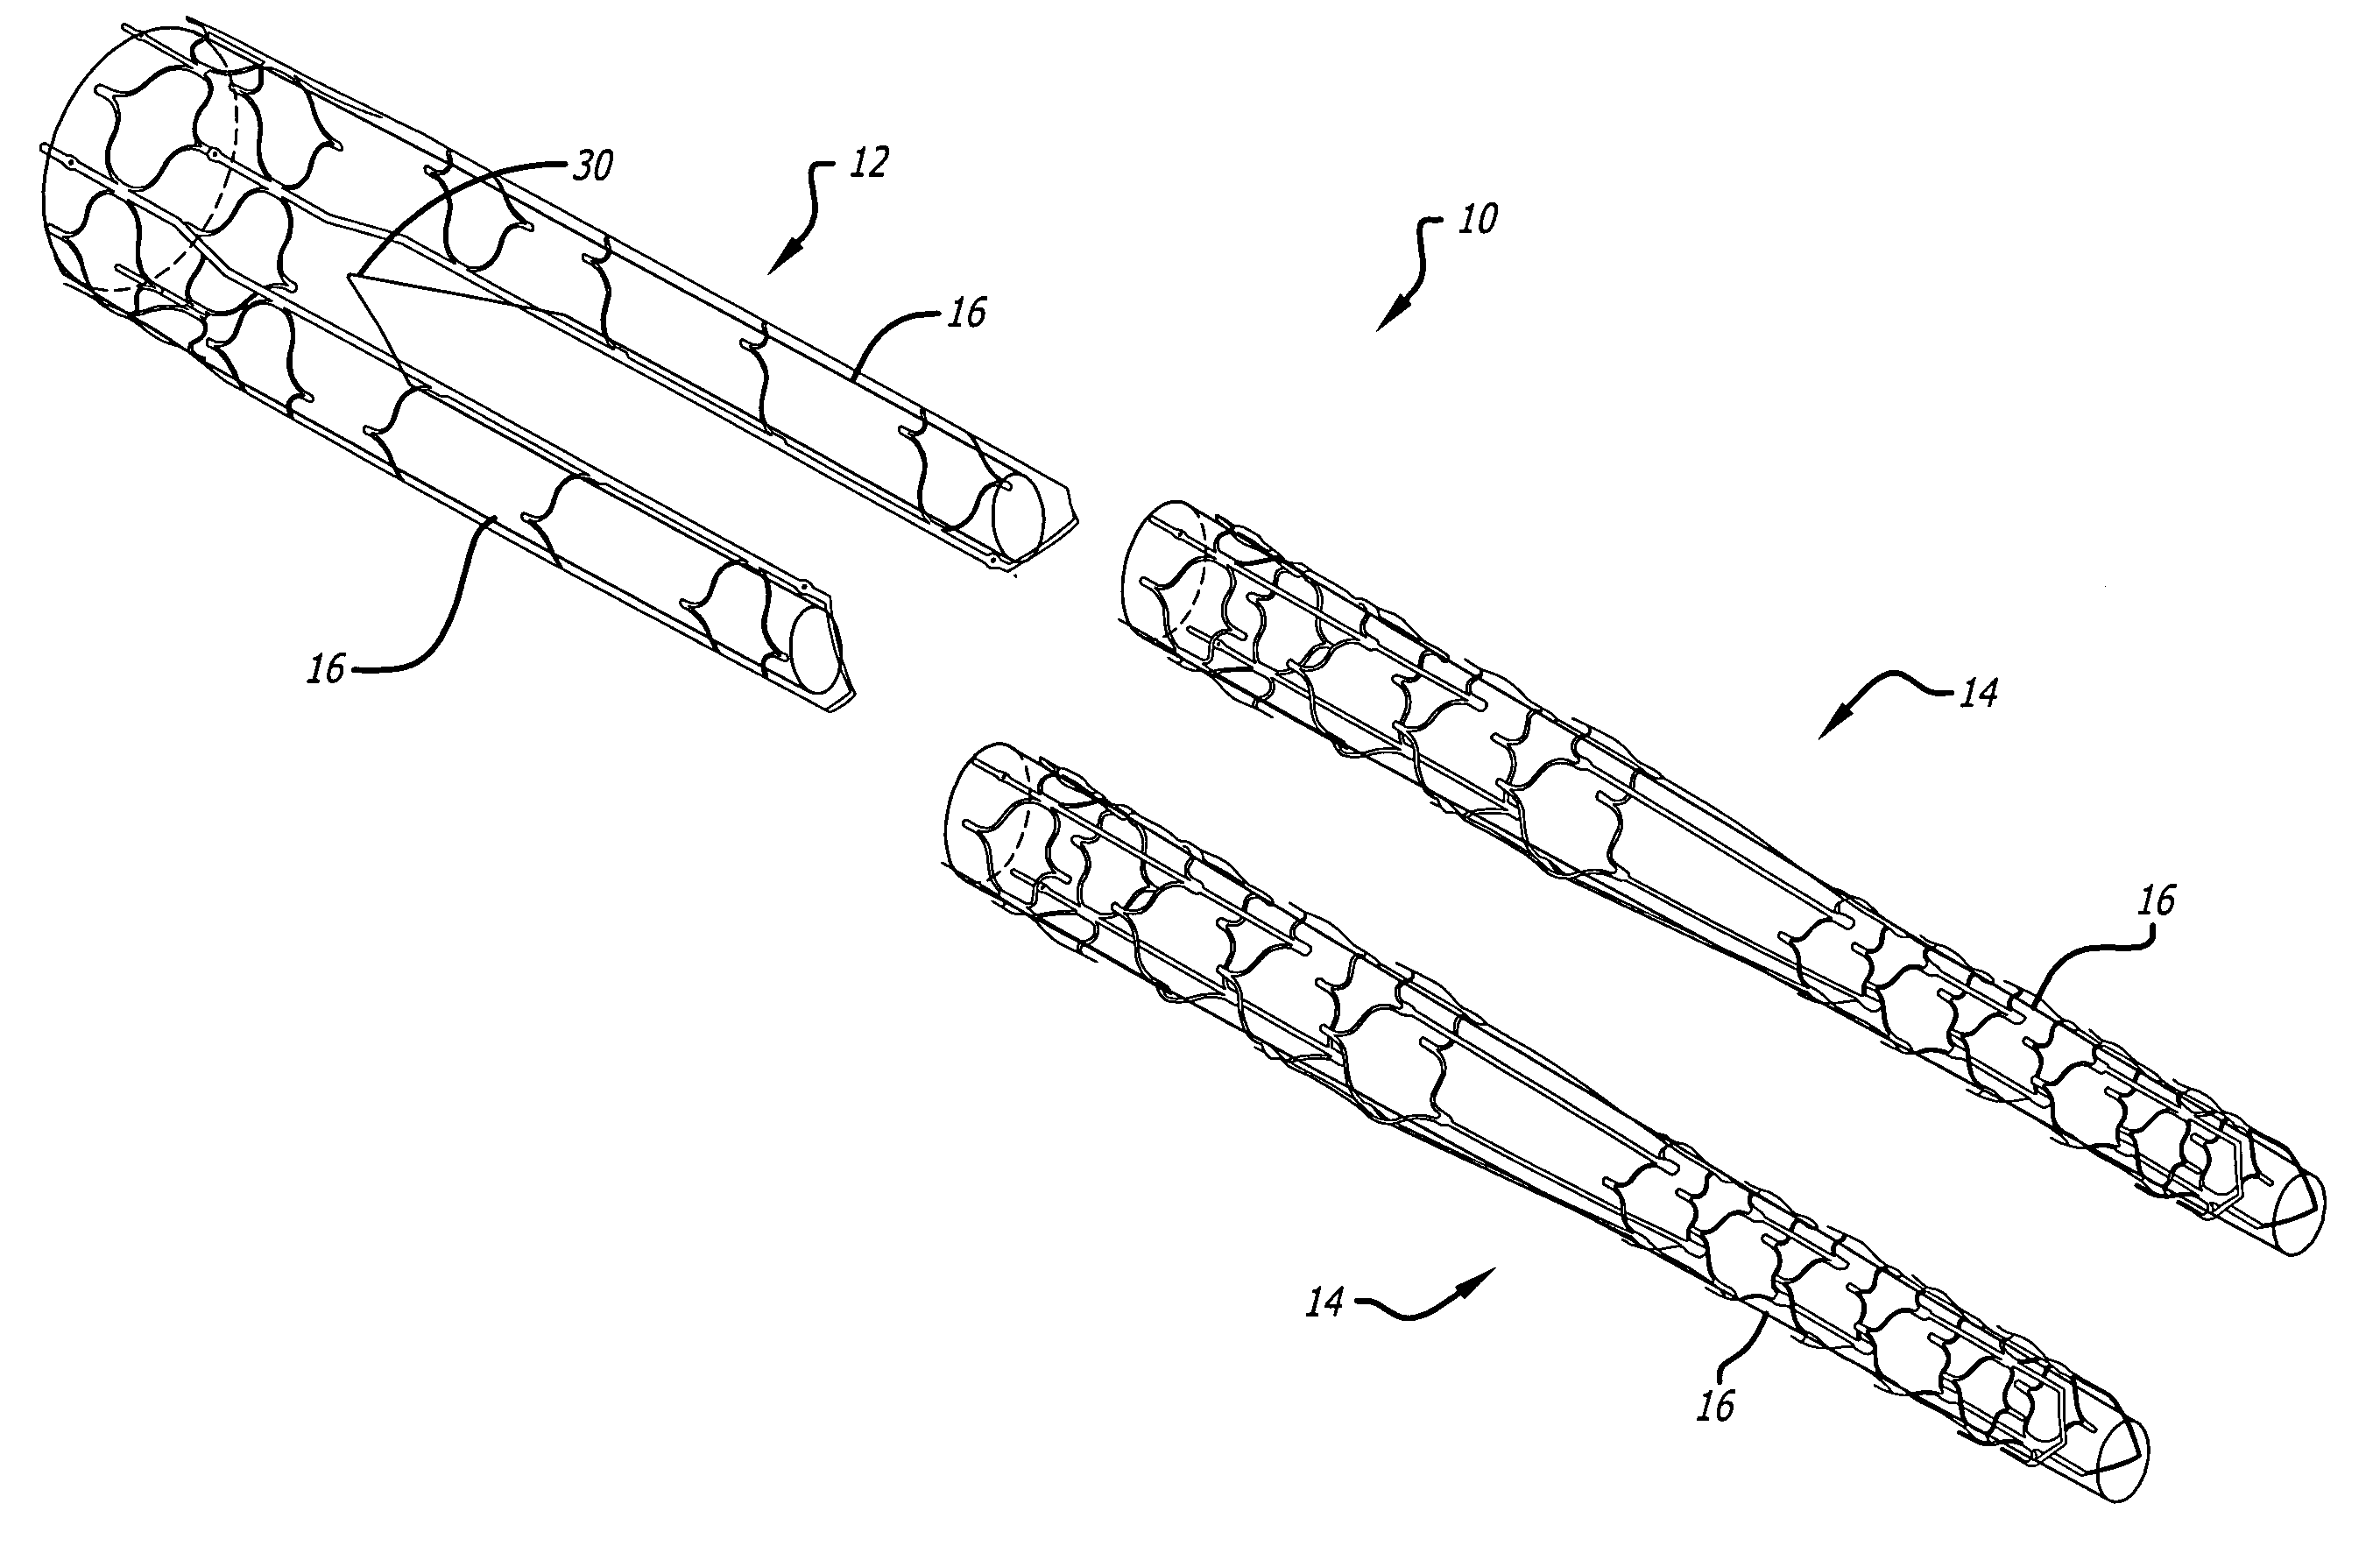 Universal length sizing and dock for modular bifurcated endovascular graft